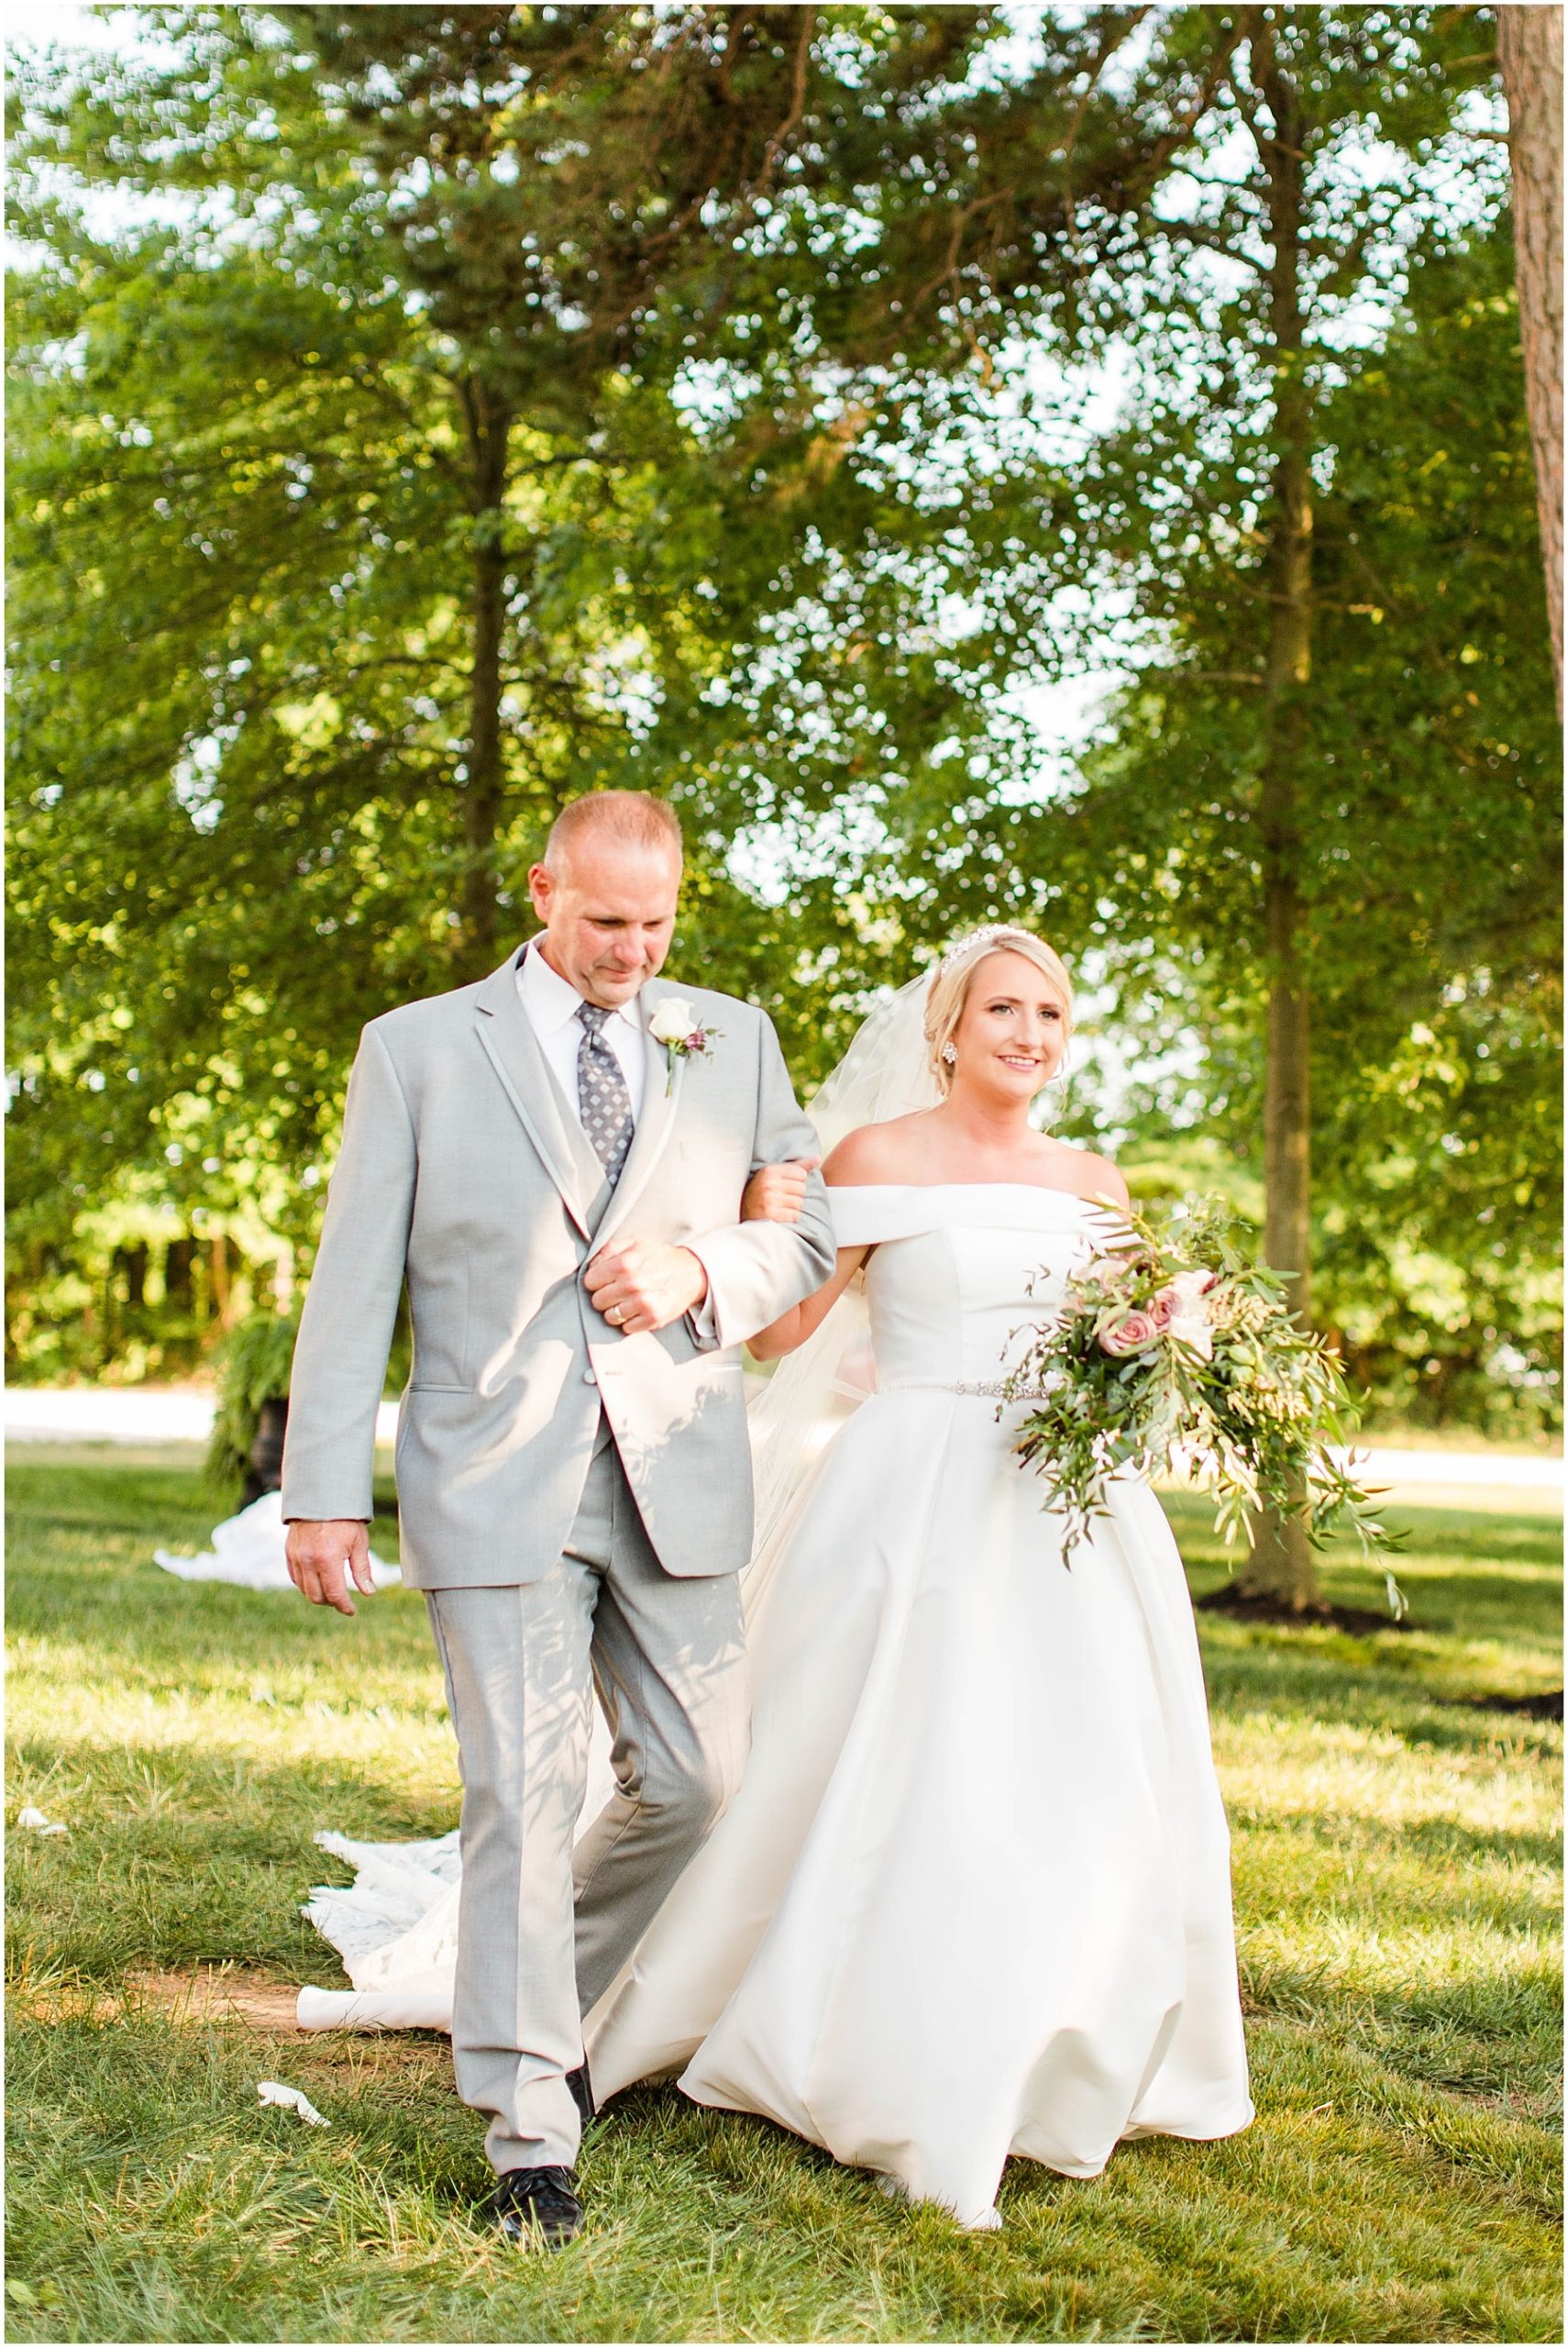 Bryce and Lauren | Wedding Blog0116.jpg